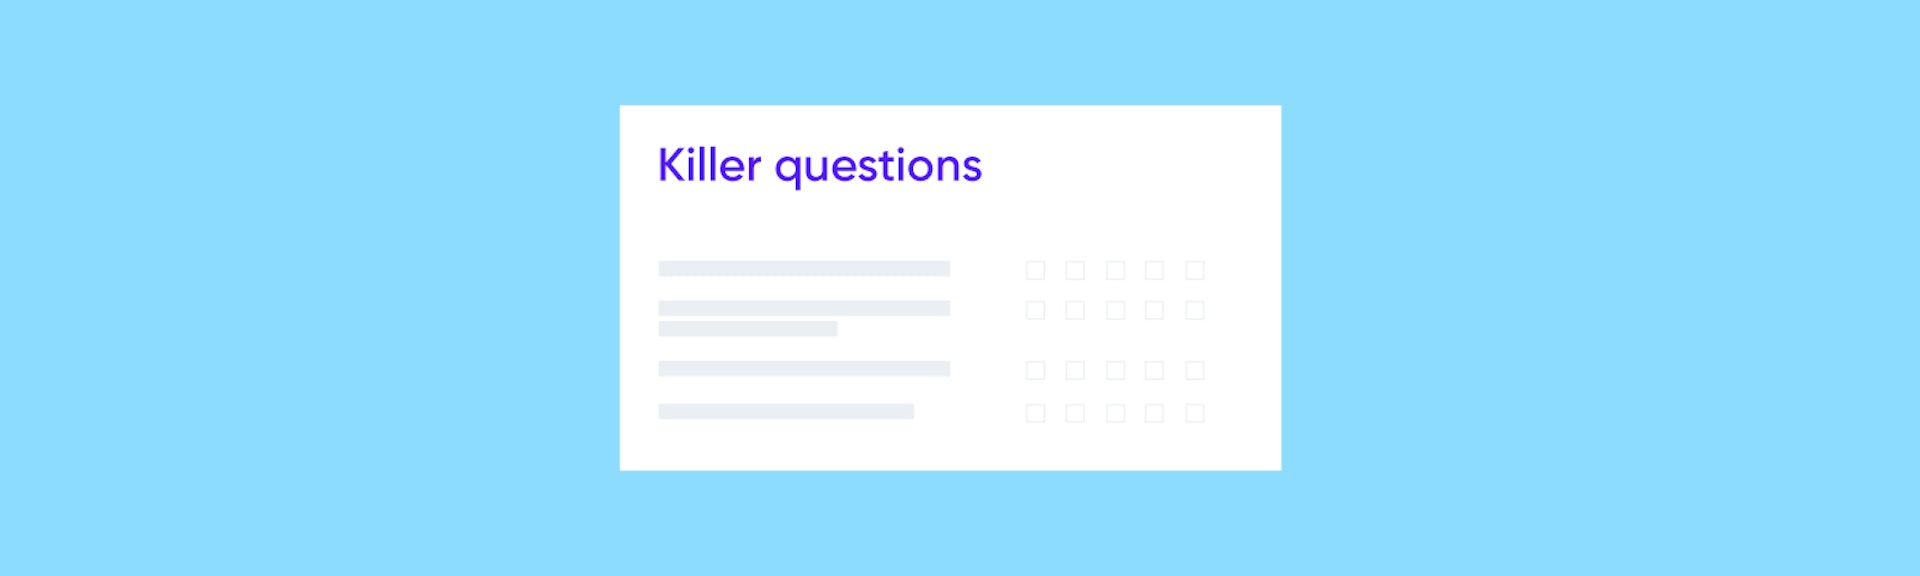 Killer questions: optimiza y acelera los procesos de reclutamiento